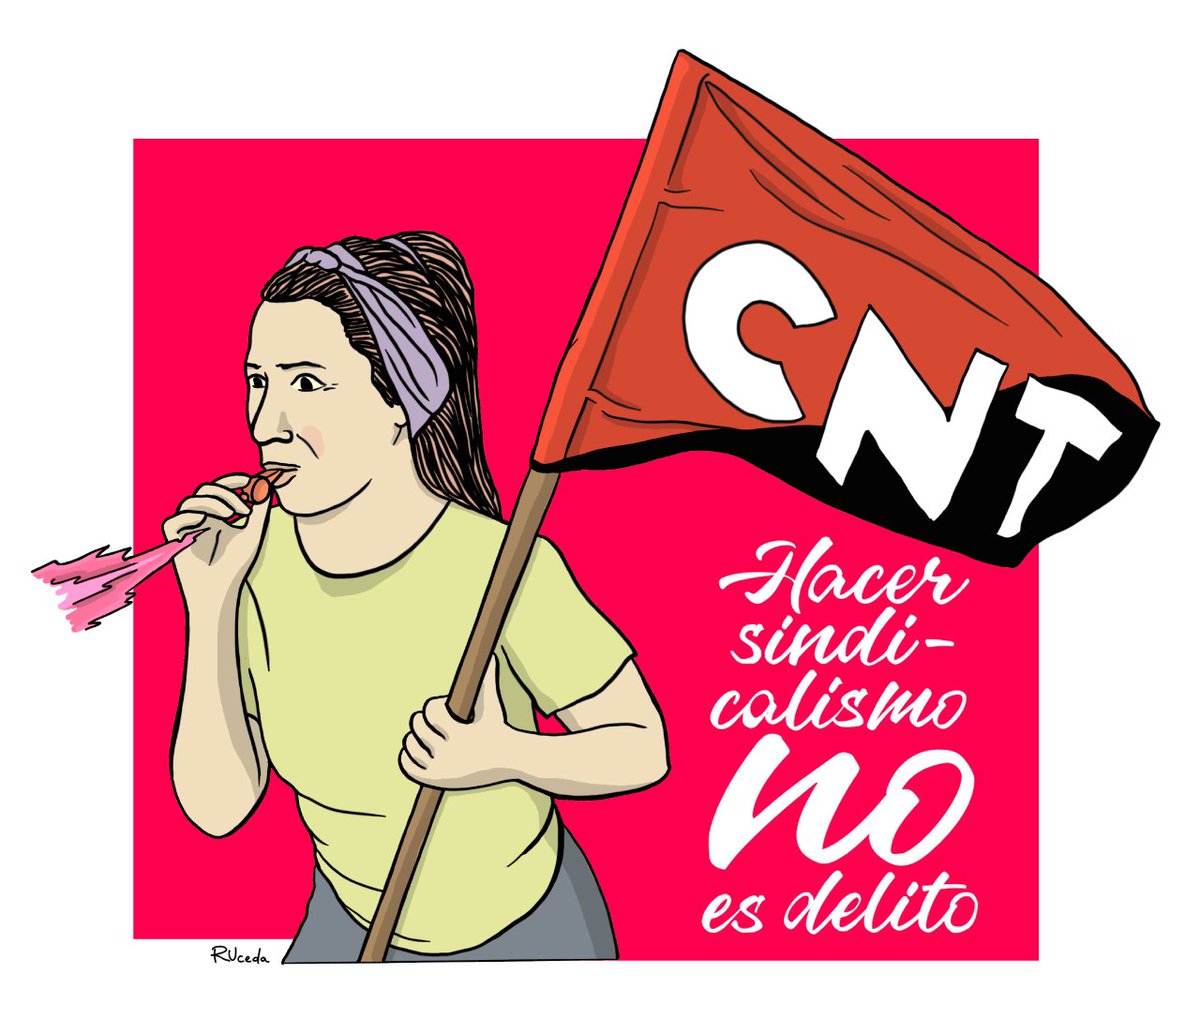 Todo mi apoyo y solidaridad con las 6 compañeras de CNT Xixón que se enfrentan a multas y penas de cárcel por defender sus derechos laborales y denunciar el #CasodelaSuiza.  
#HacerSindicalismoNoEsDelito 
#24SLlenarMadriddeSolidaridad